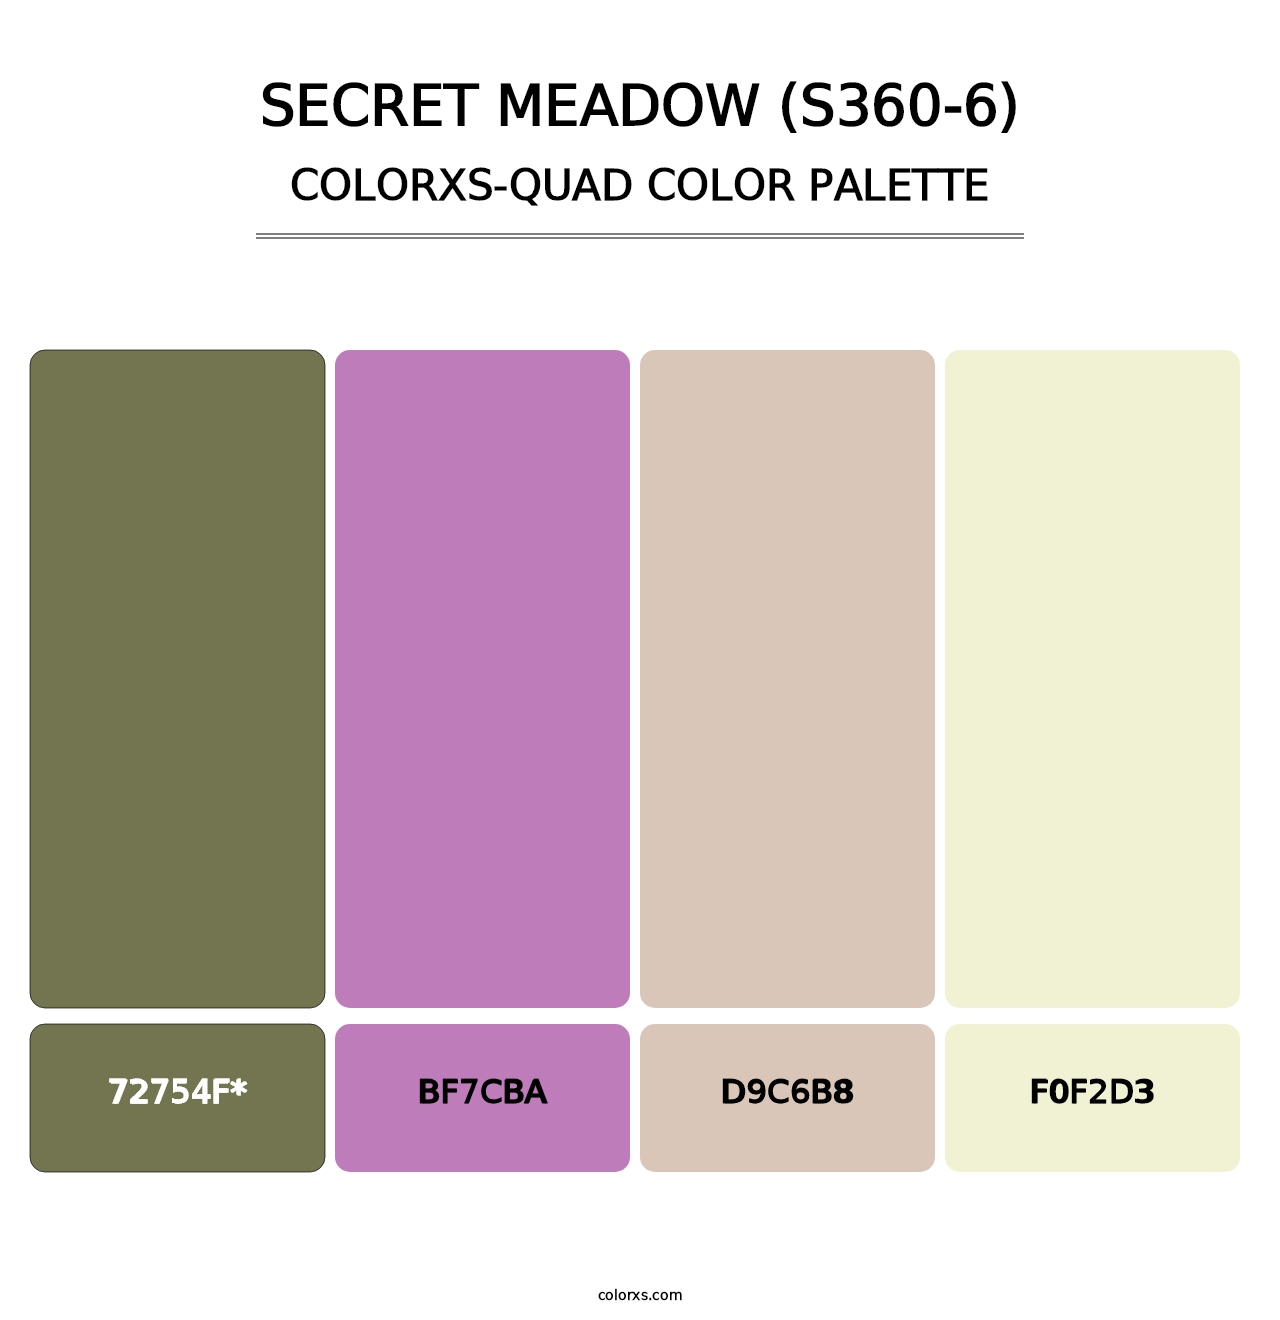 Secret Meadow (S360-6) - Colorxs Quad Palette